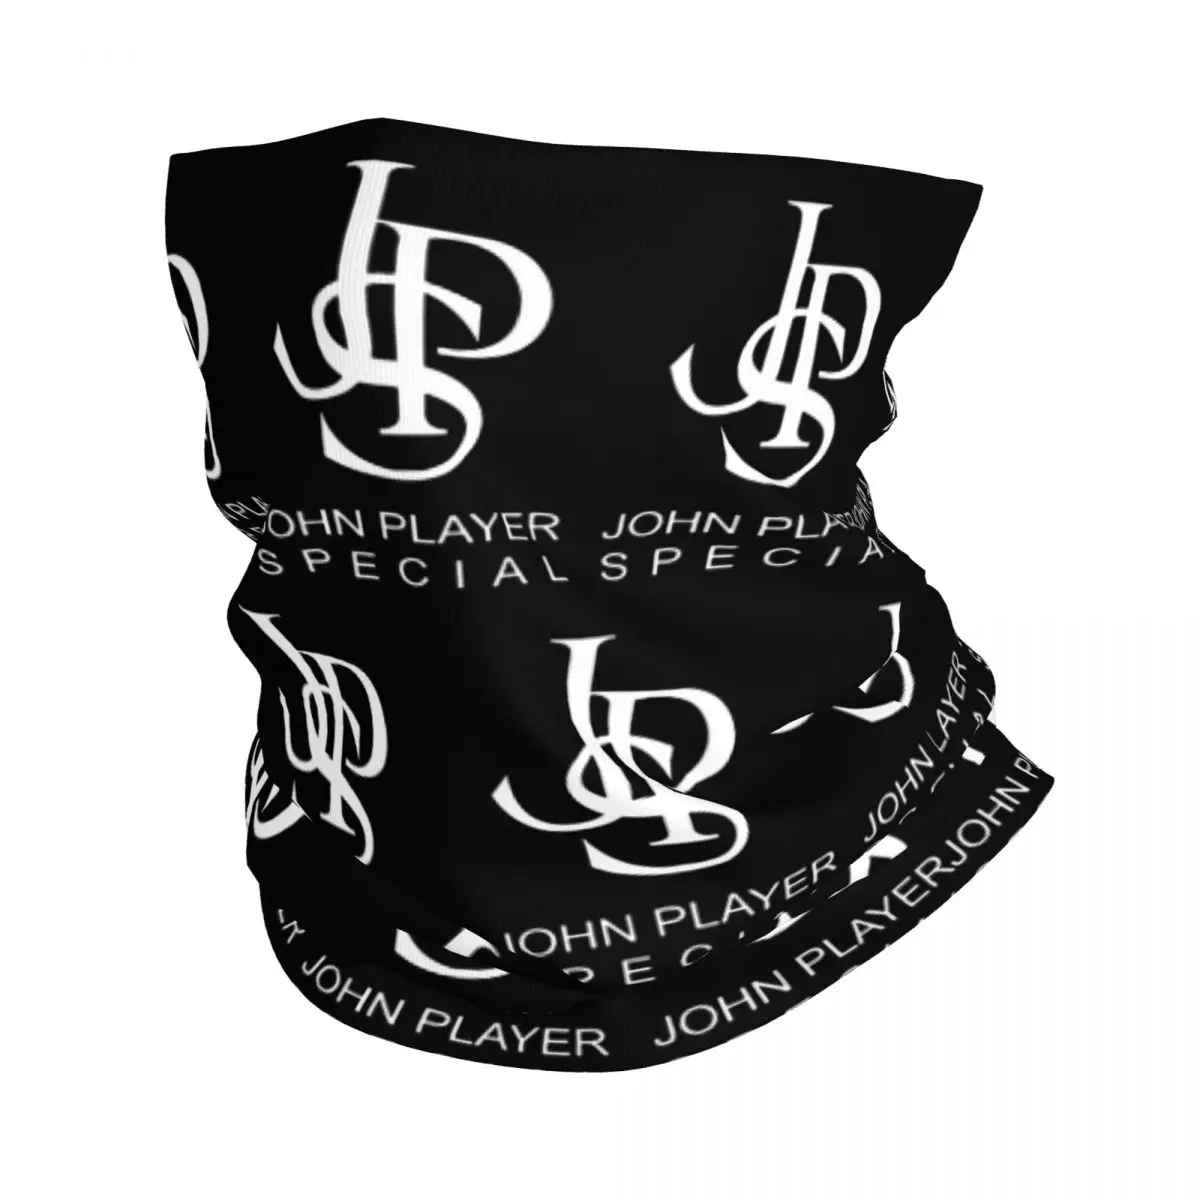 

Бандана JPS John Player с специальным логотипом, шейный Гетр, волшебный шарф, многофункциональная маска для лица, дышащая, для мужчин, женщин и взрослых